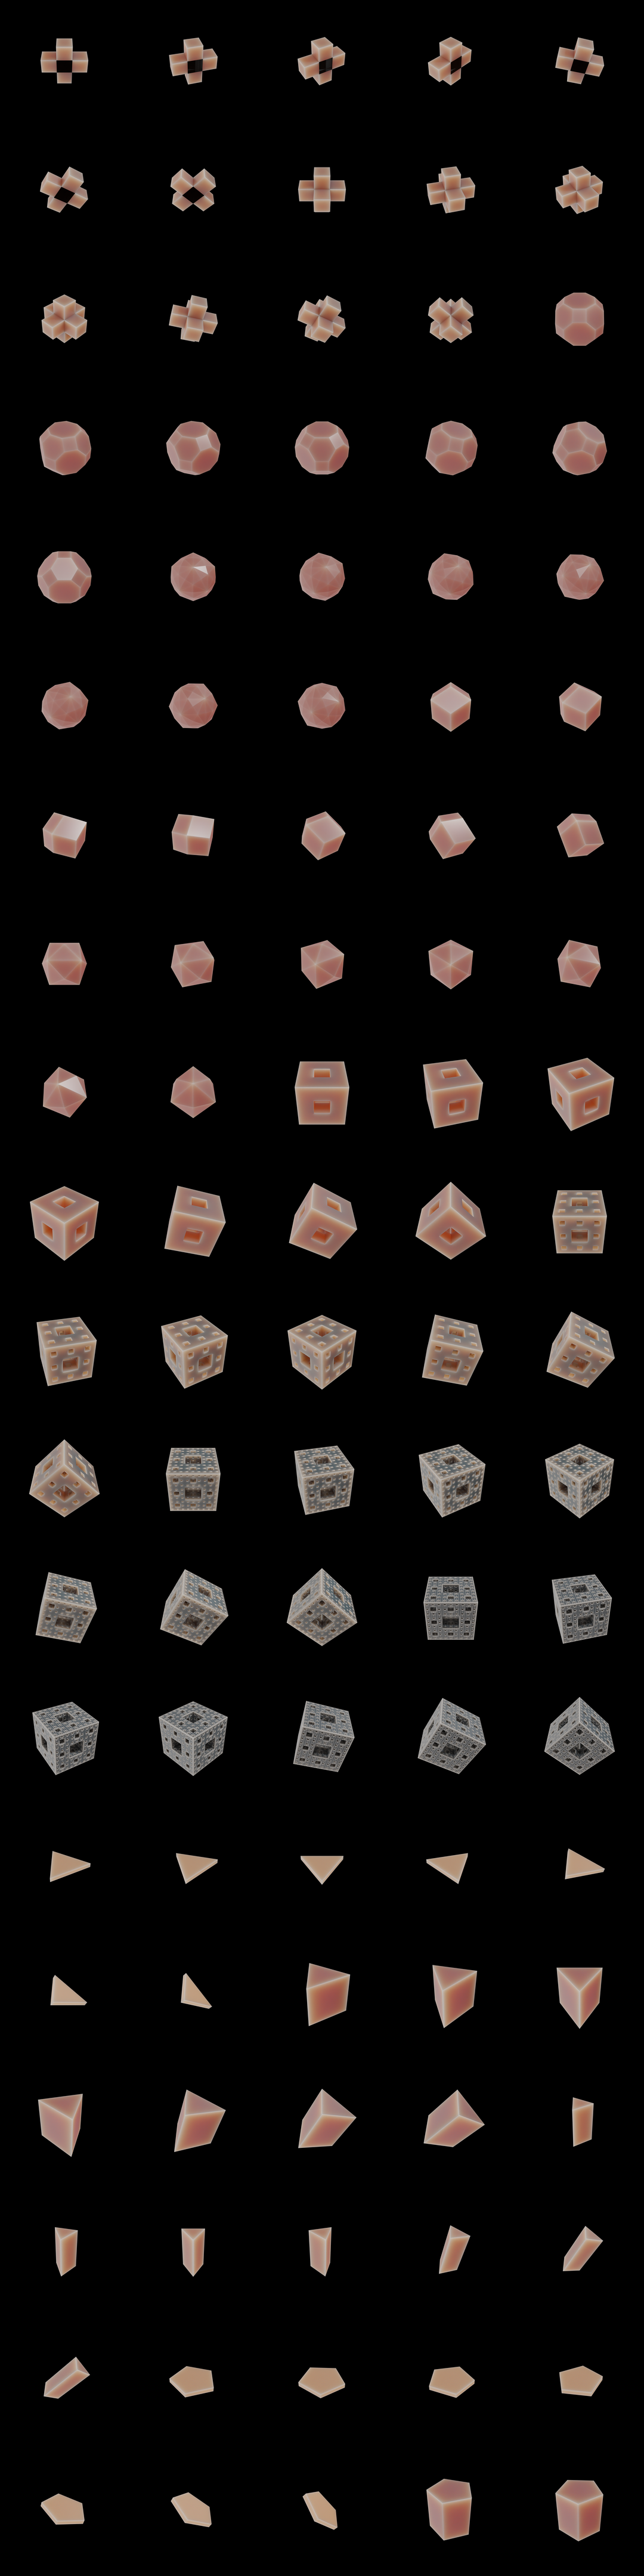 The Bundle - sss/b tile image 2